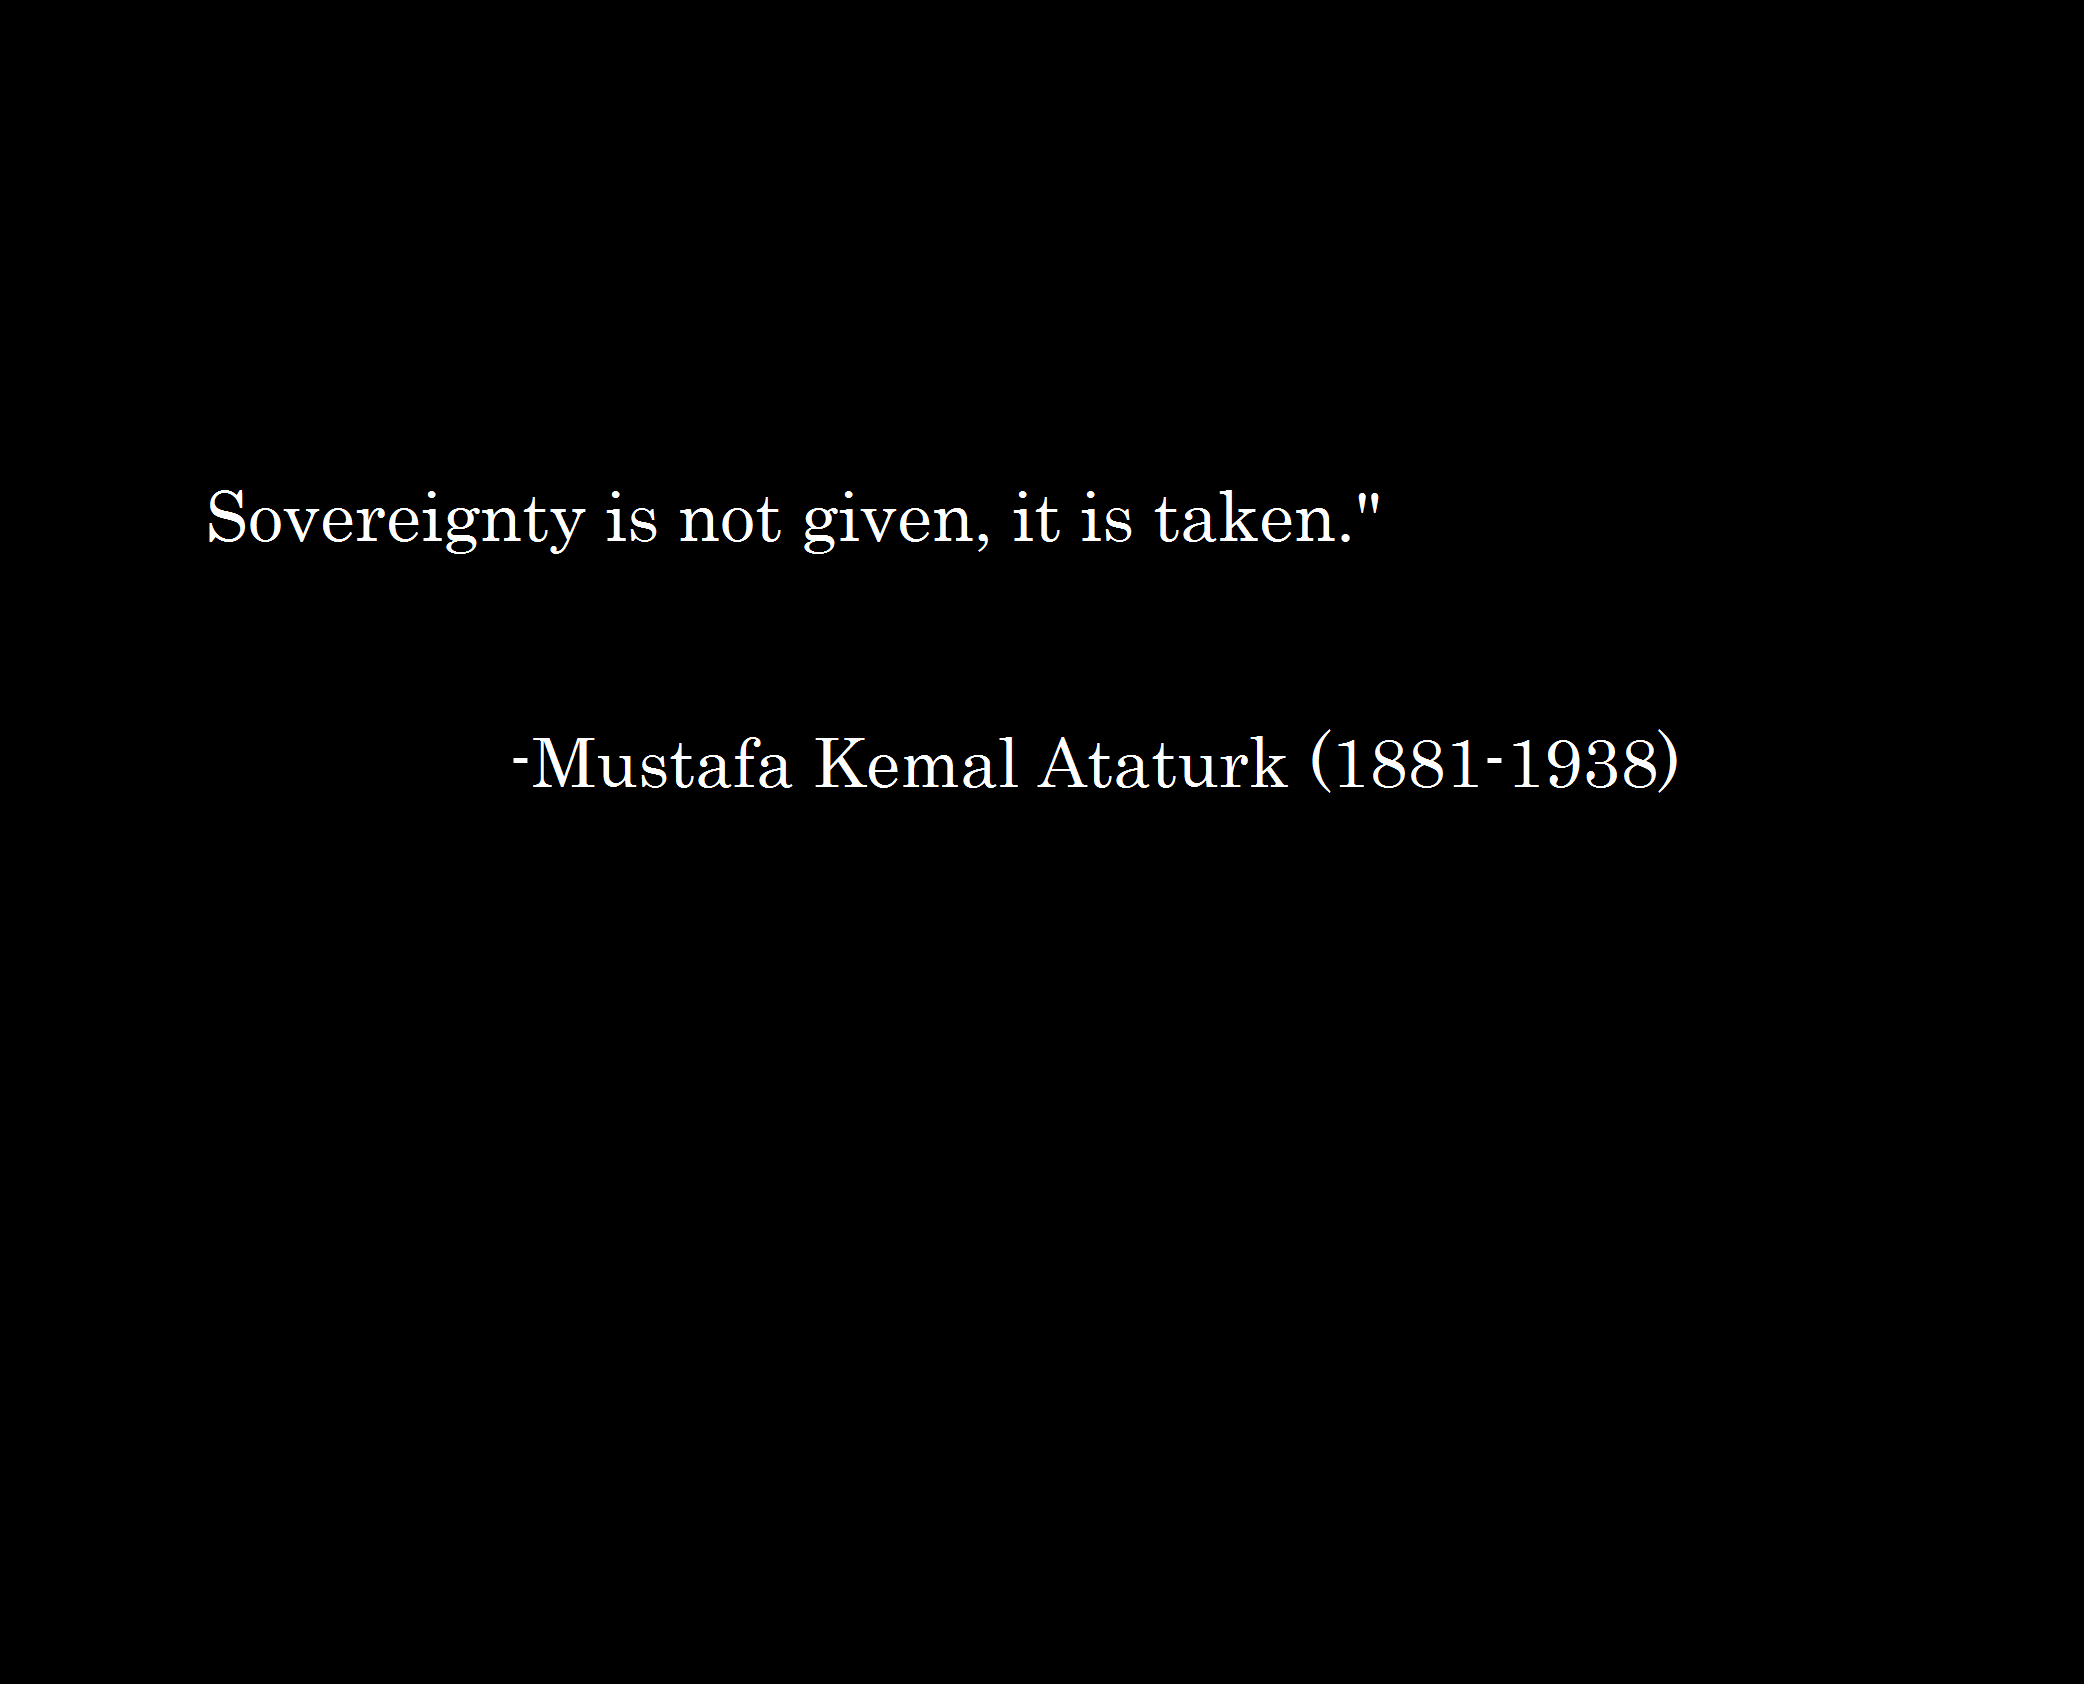 Mustafa Kemal Ataturk Quote Simple 2084x1684